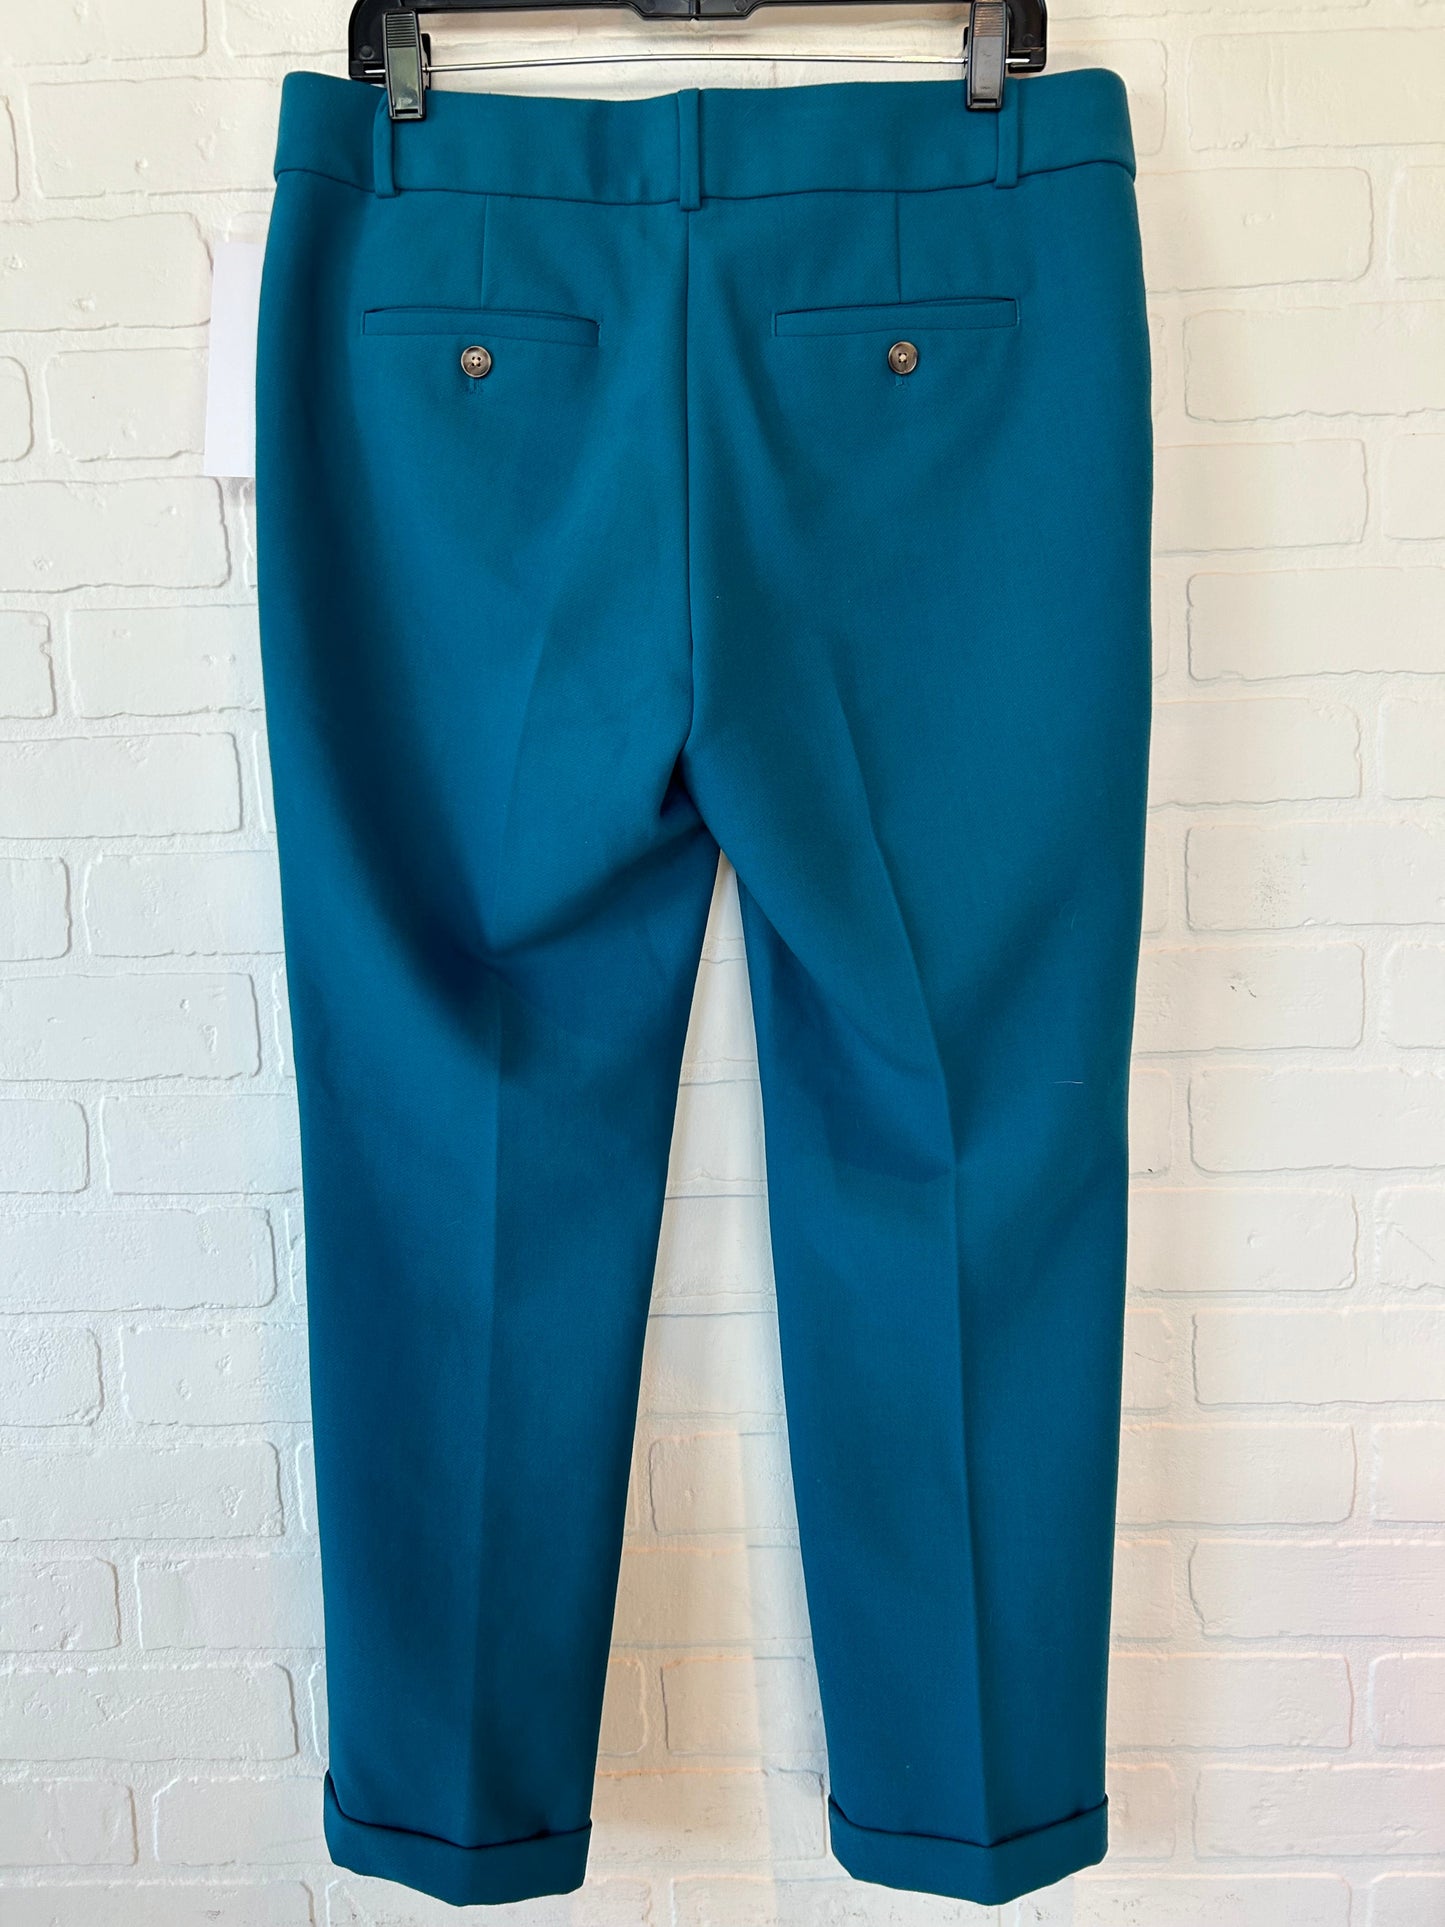 Blue Pants Dress Loft, Size 8